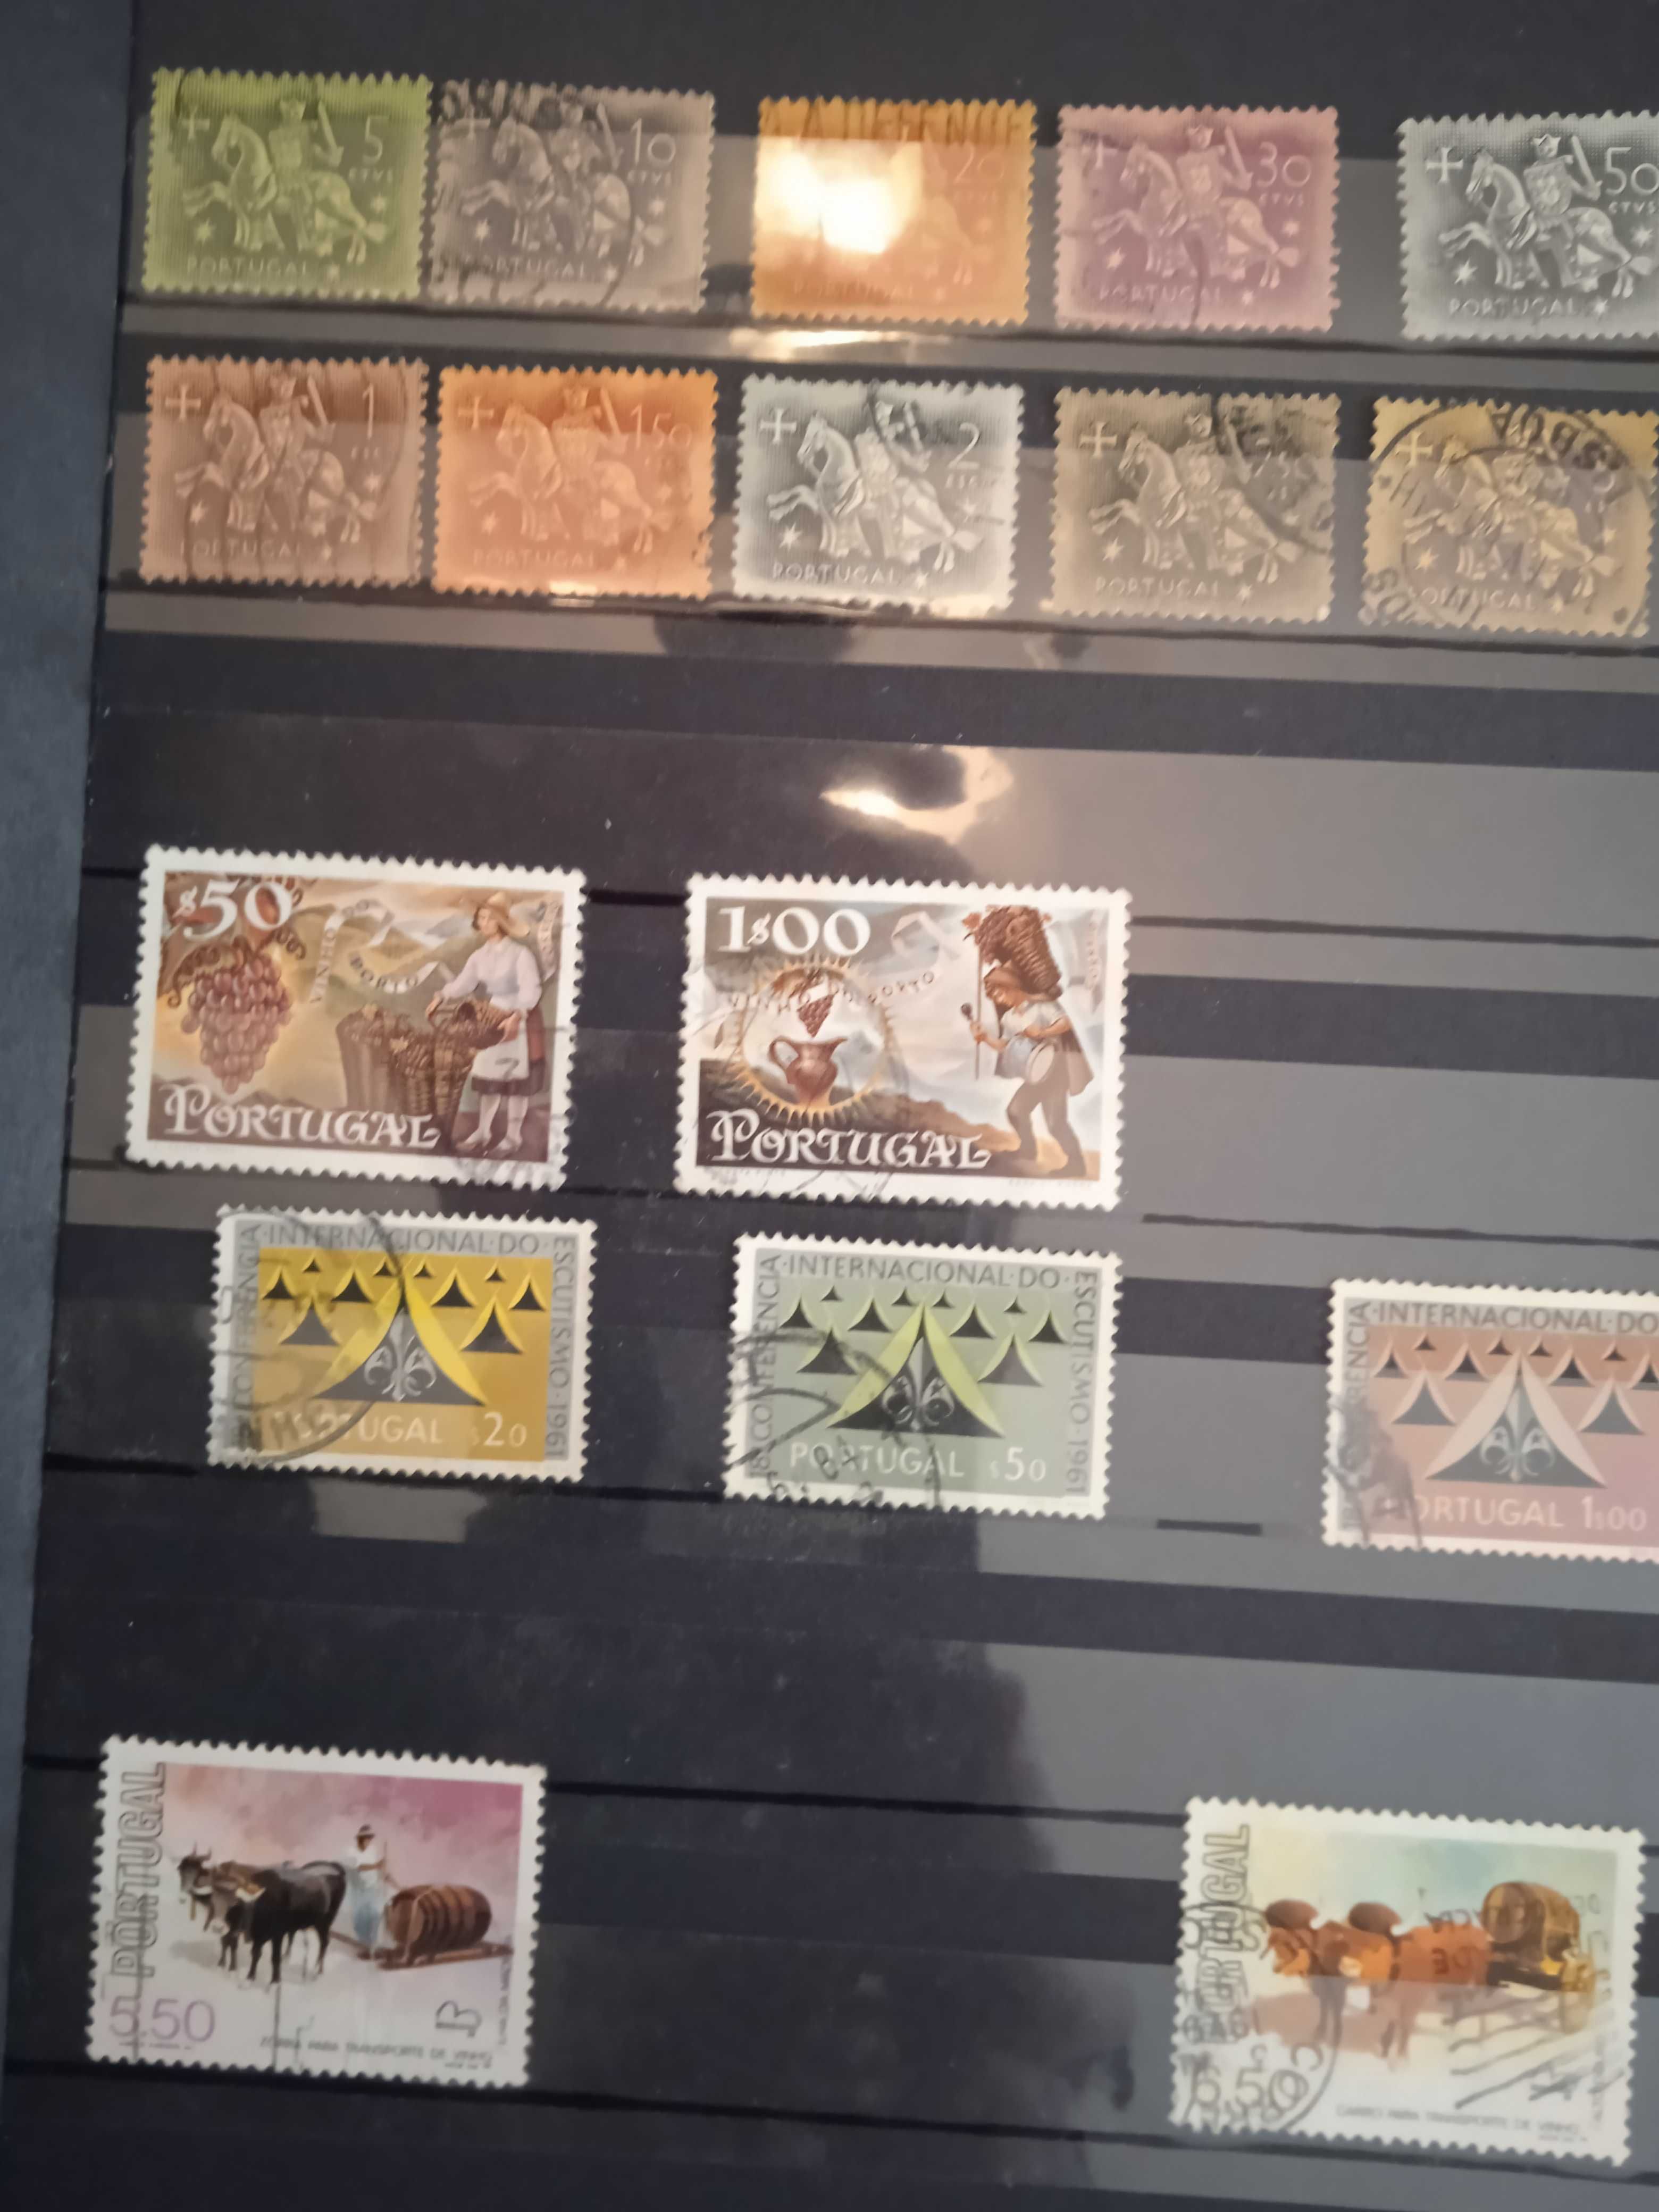 Coleção de selos dos anos 80